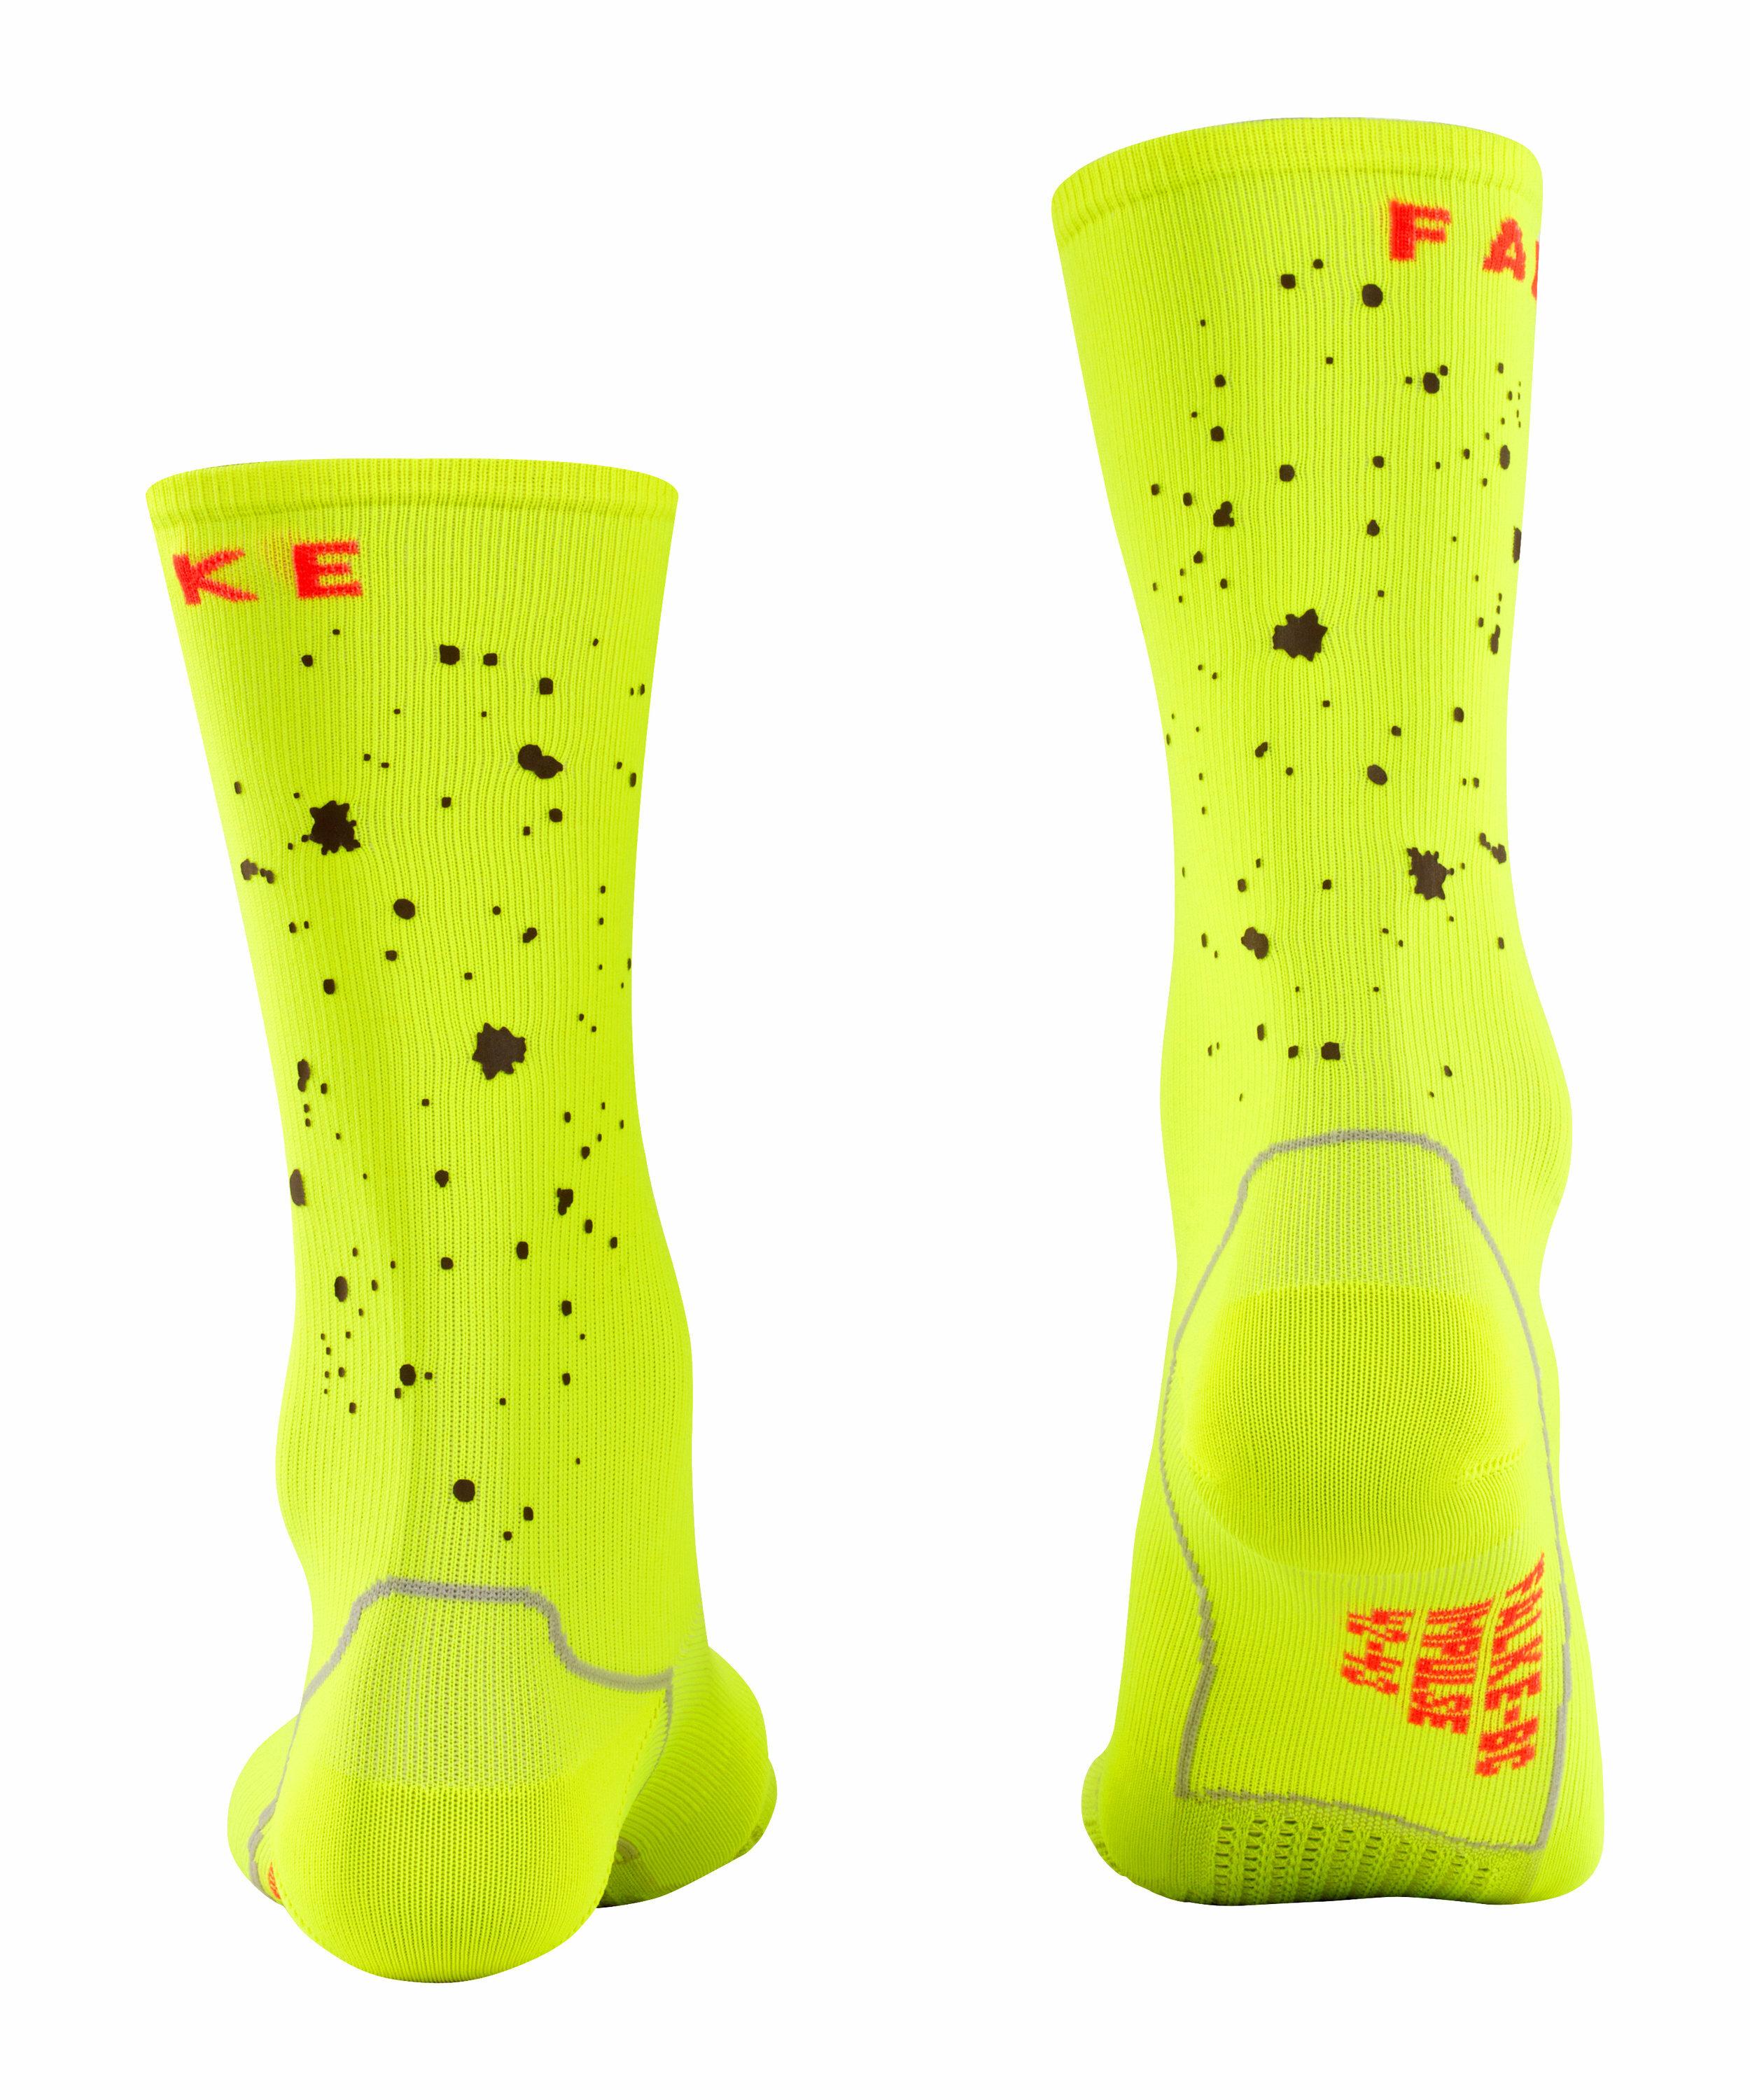 FALKE BC Impulse Reflective Socken, 37-38, Gelb, AnderesMuster, 16862-16900 günstig online kaufen